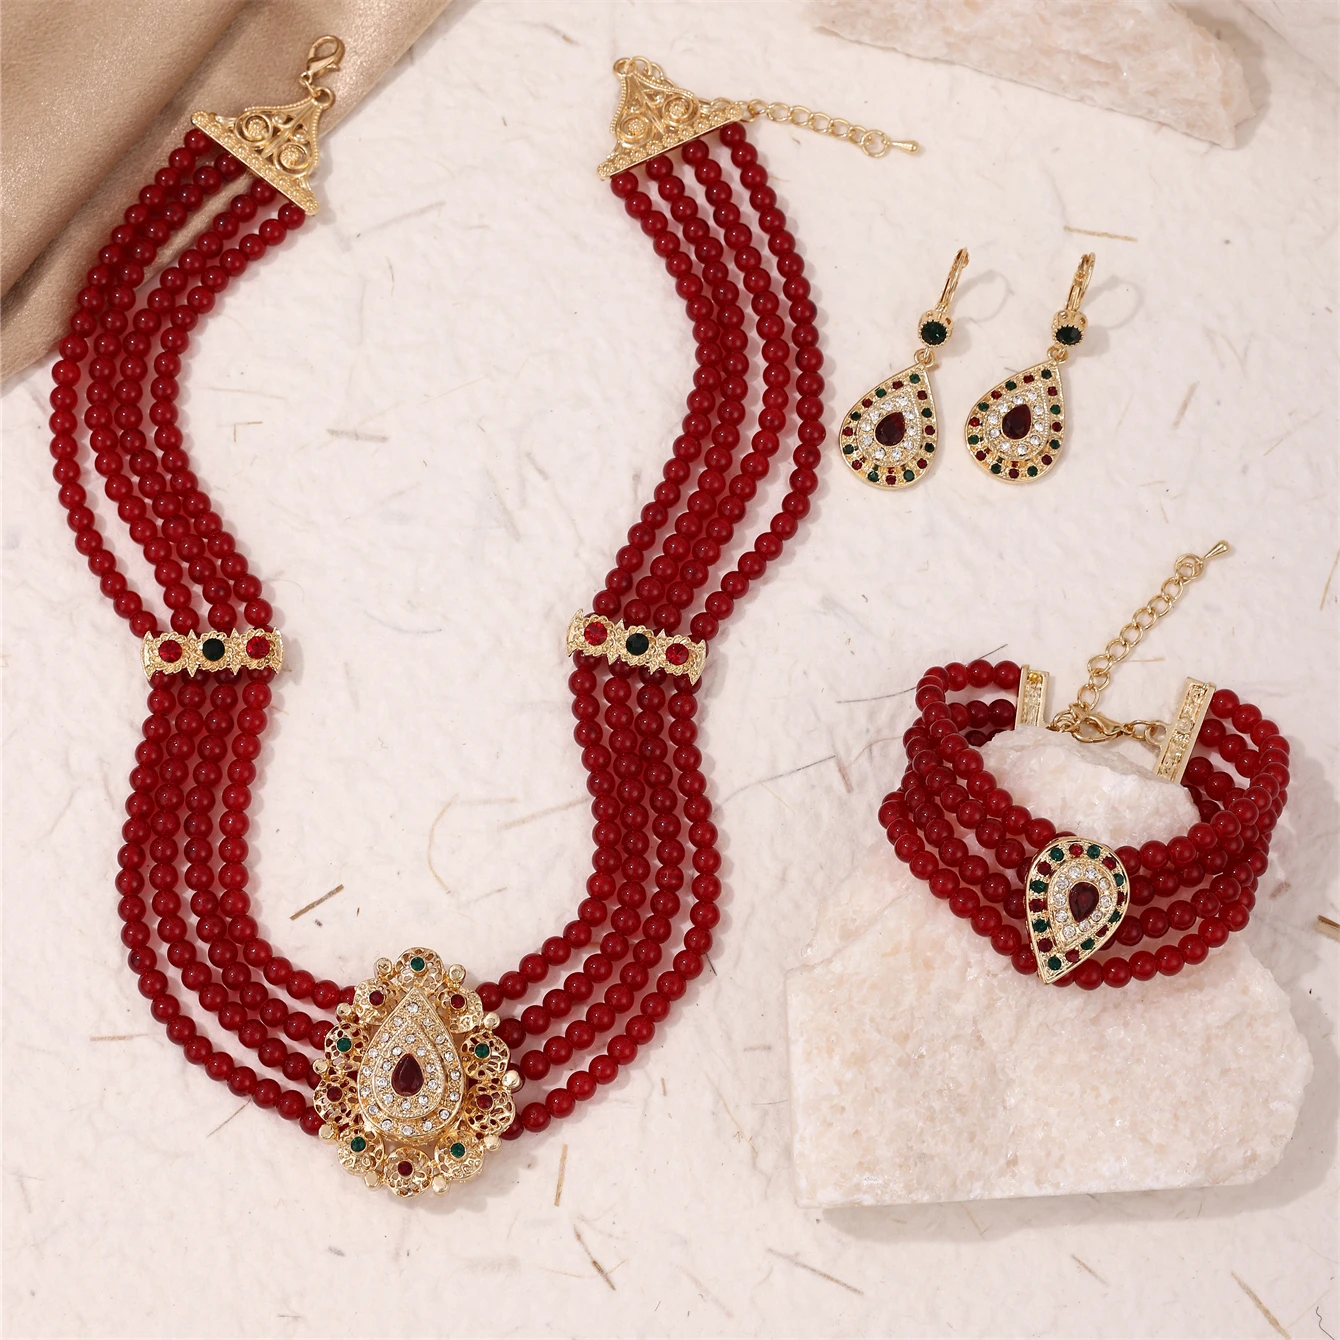 

Набор украшений из бисера бордового цвета для женщин средневосточного стиля, колье, серьги, браслет, комплект из 3 предметов